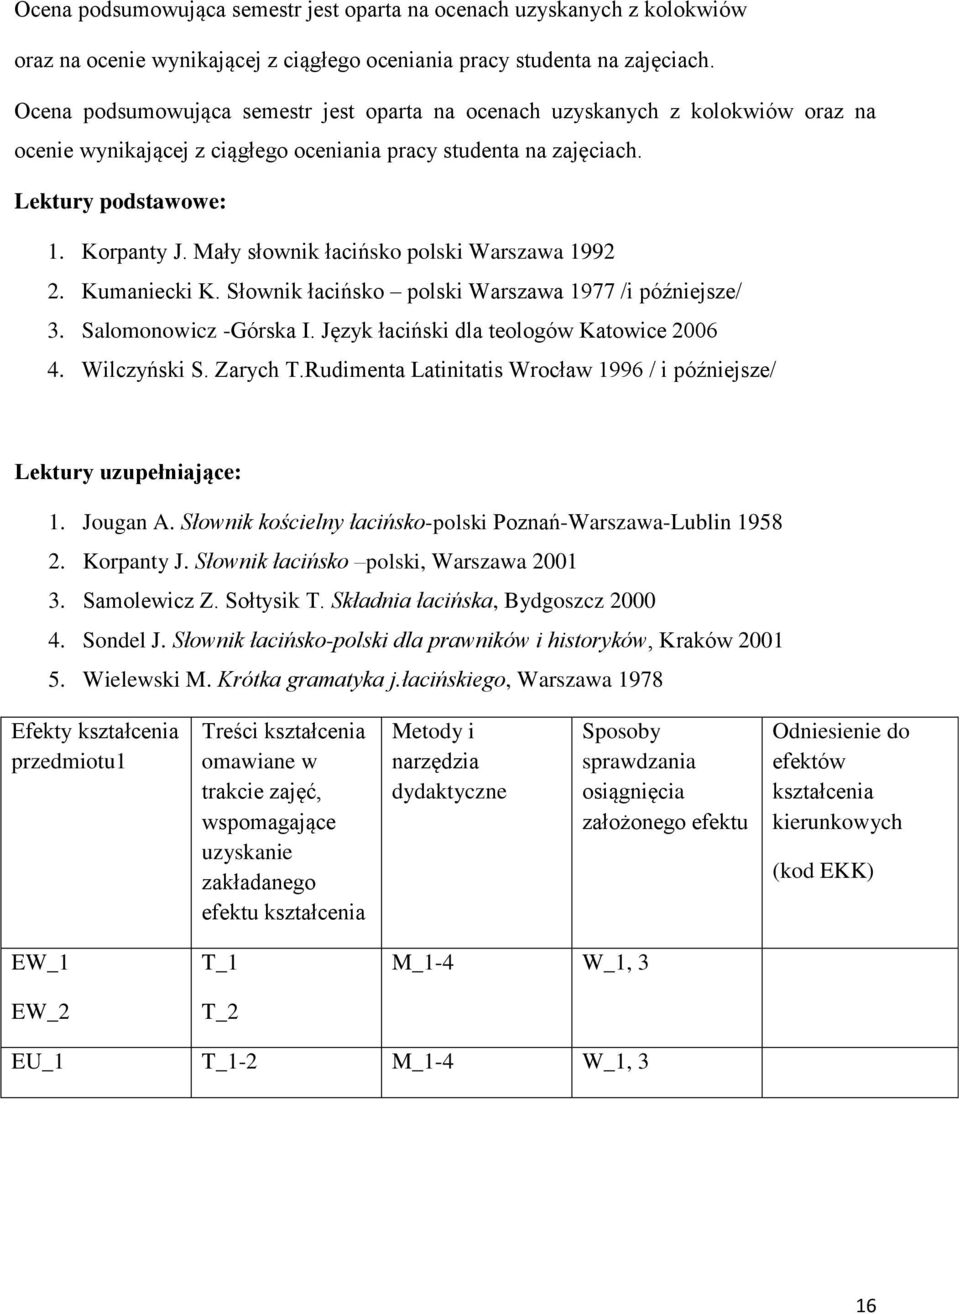 Język łaciński dla teologów Katowice 2006 4. Wilczyński S. Zarych T.Rudimenta Latinitatis Wrocław 1996 / i późniejsze/ Lektury uzupełniające: 1. Jougan A.